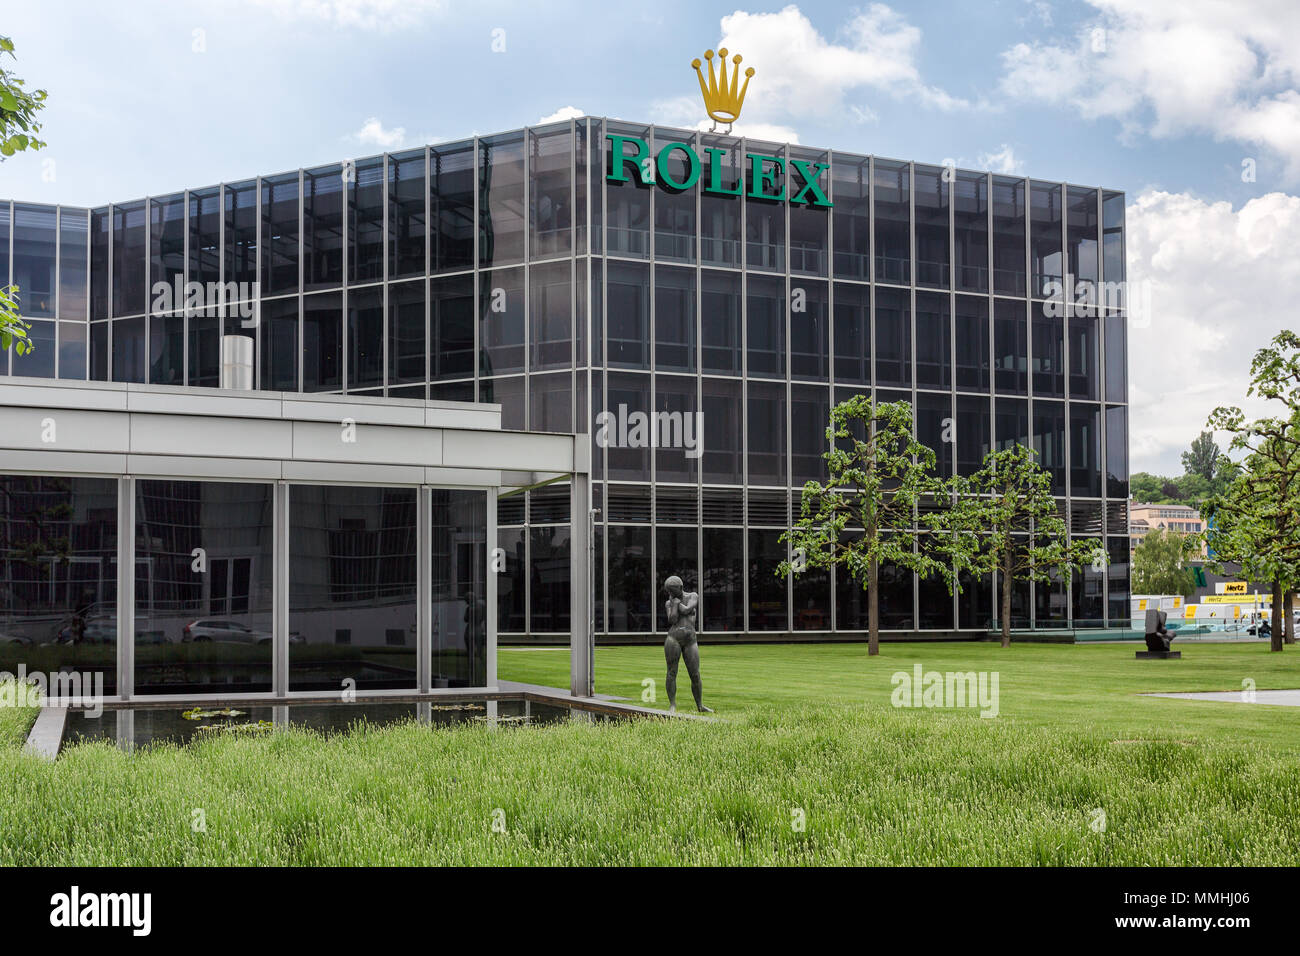 88/5000 Die Rolex Gebäude in Genf, Schweiz, ist ein herstellen, dass Uhren  macht Stockfotografie - Alamy